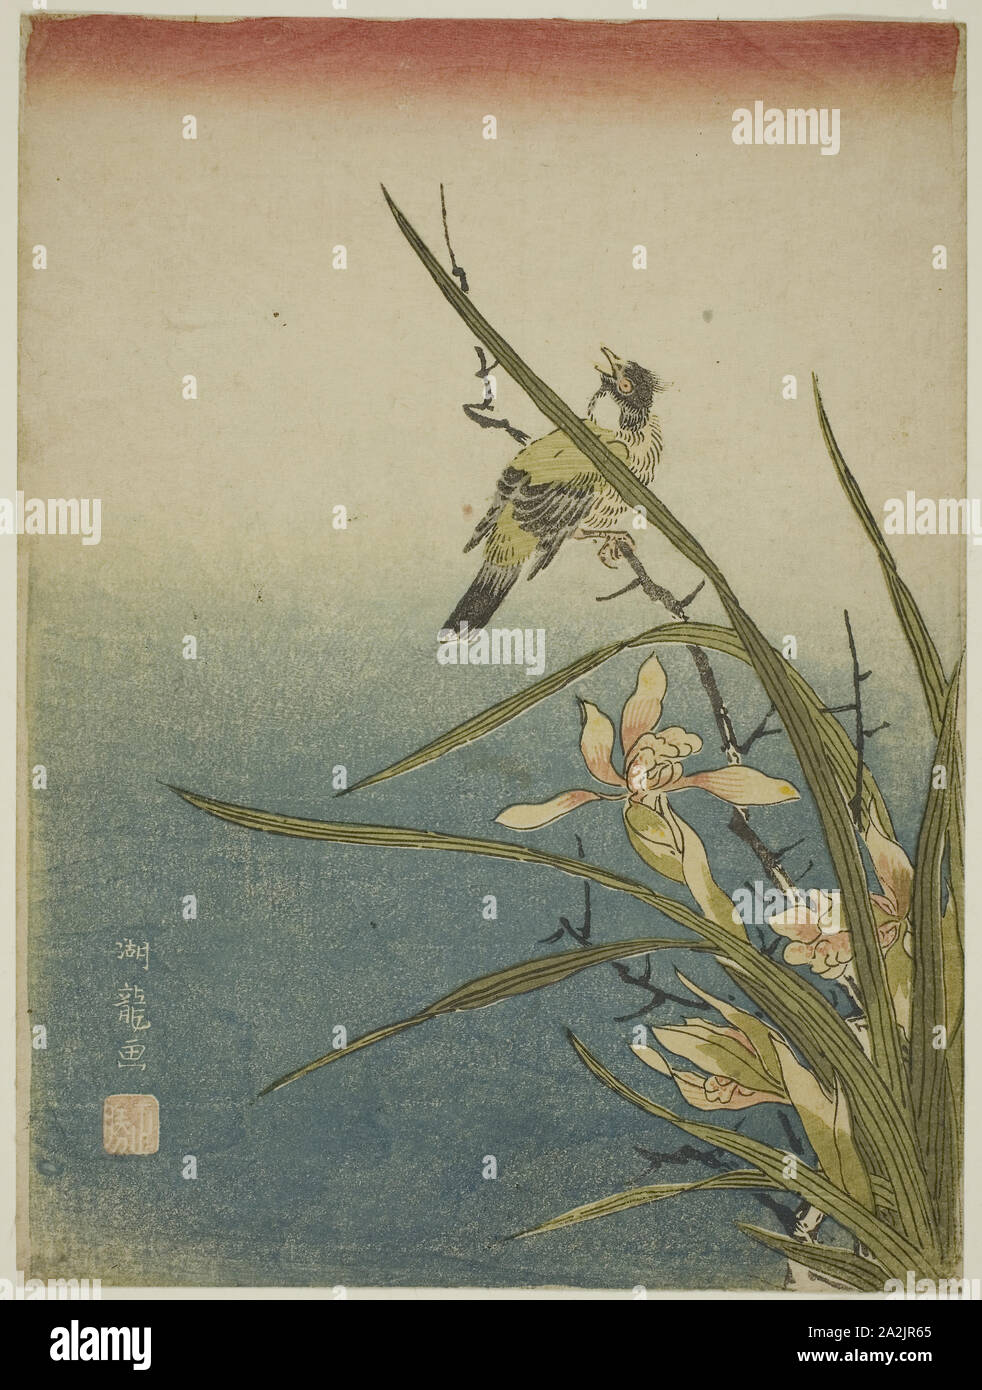 Des oiseaux et des orchidées, ch. 1770, Isoda Koryusai, Japonais, 1735-1790, le Japon, la couleur, estampe chuban, 10 x 7 1/2 po Banque D'Images